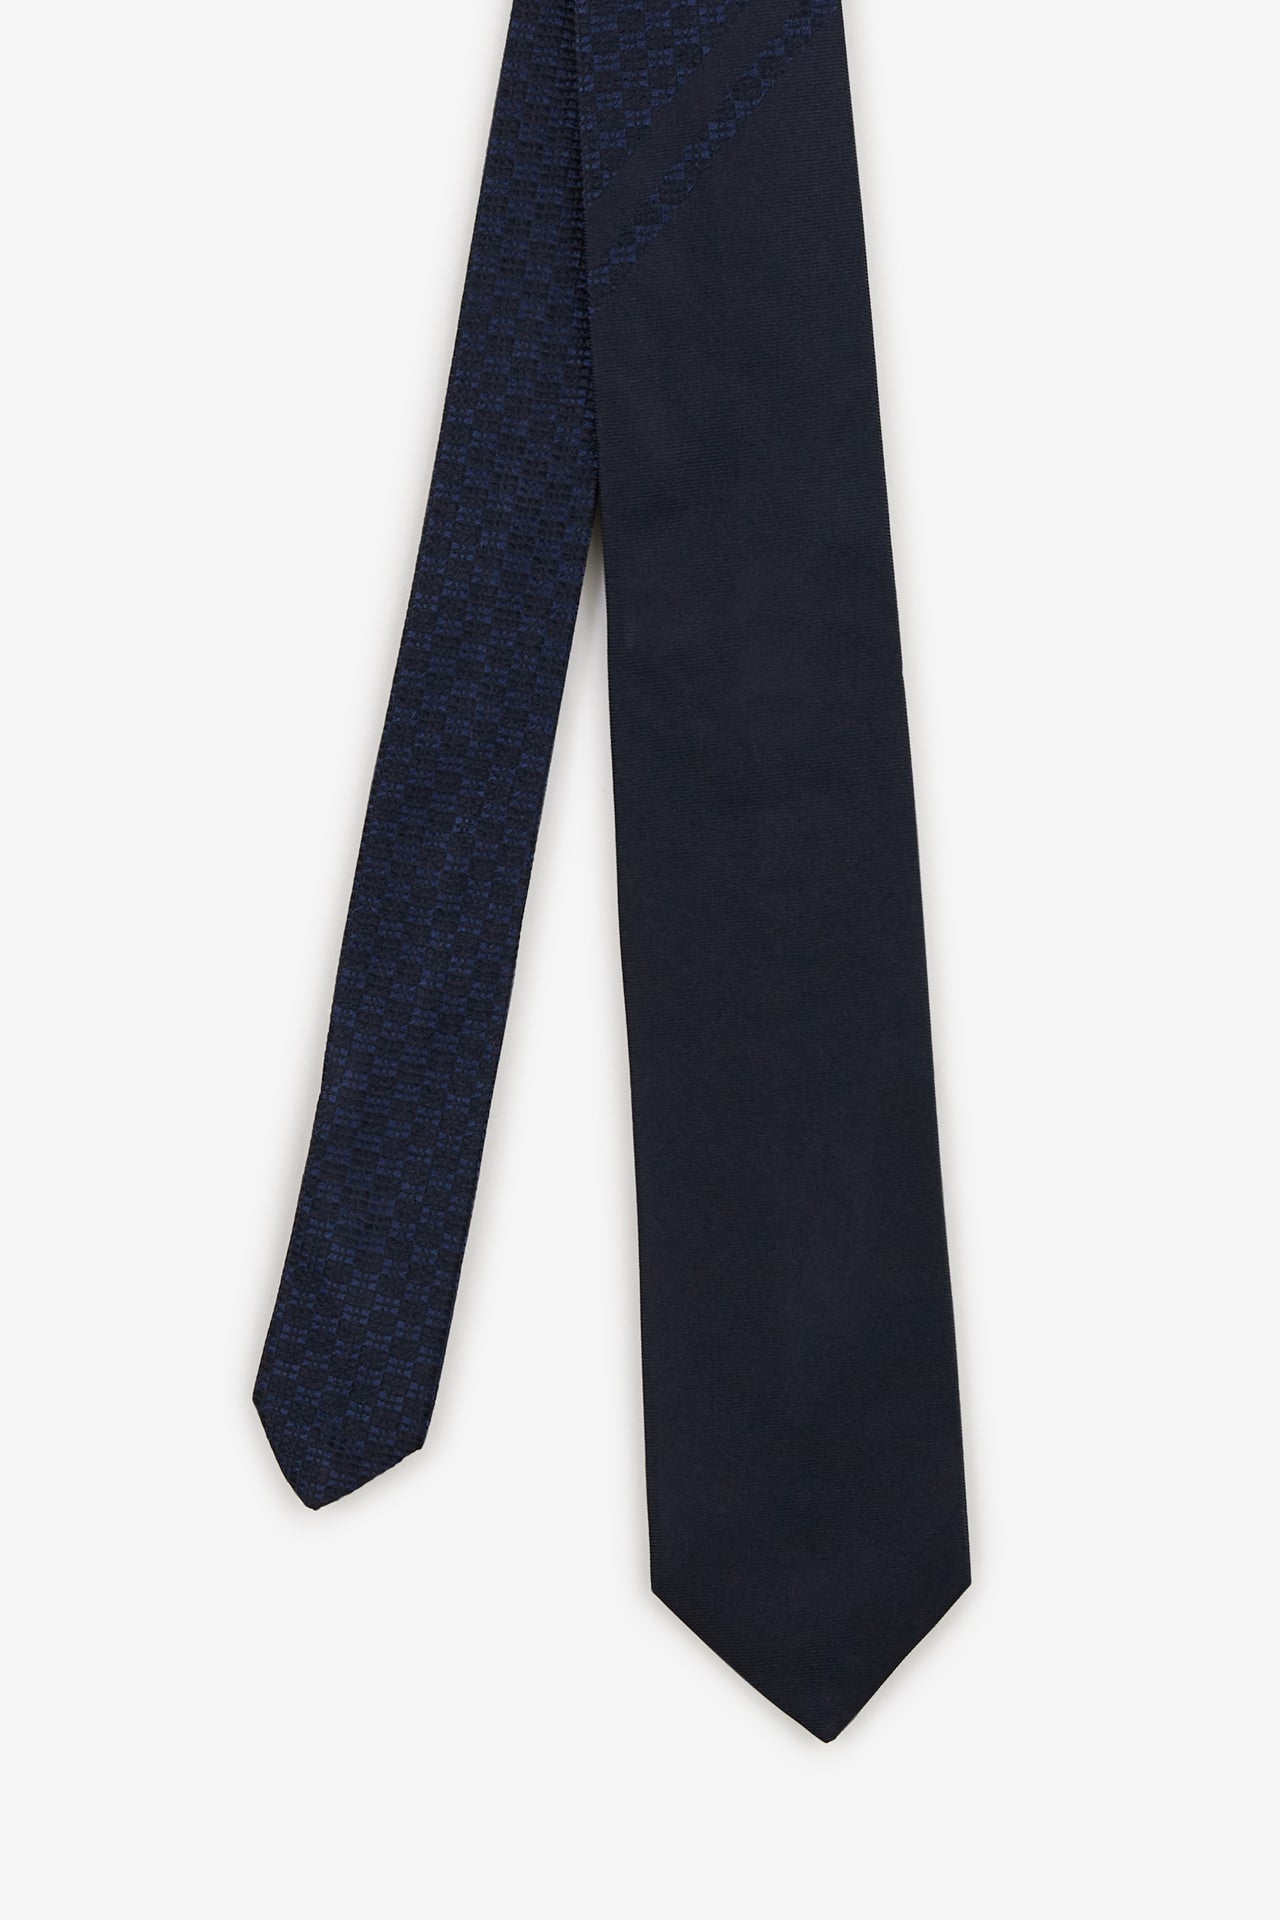 Cravate bleue à micro-motifs nœuds papillon bicolores - Image 1